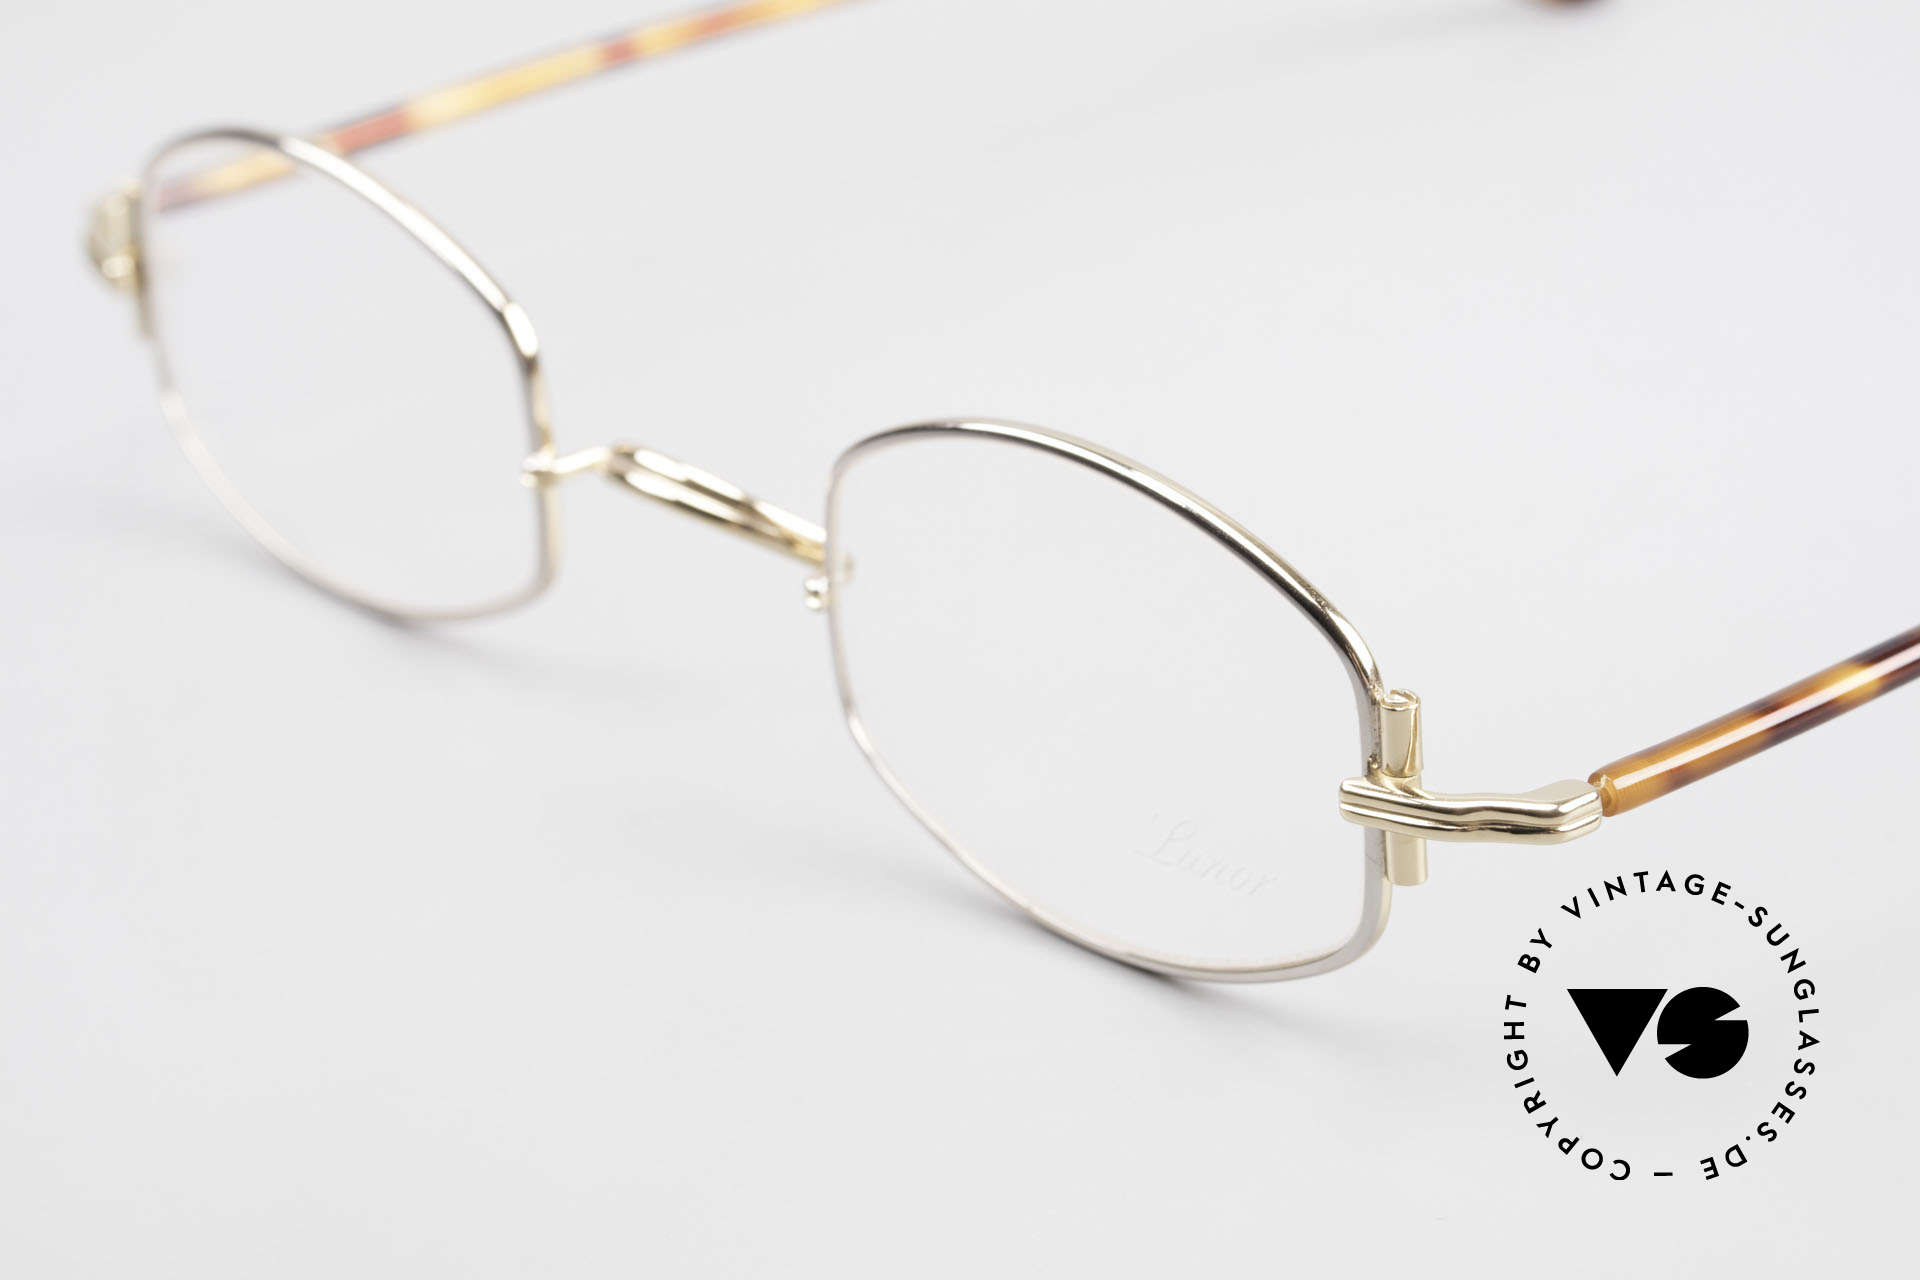 Lunor XA 03 Lunor Brille No Retro Vintage, Mod. XA 03 mit anatomischem Steg & Acetat-Bügeln, Passend für Herren und Damen